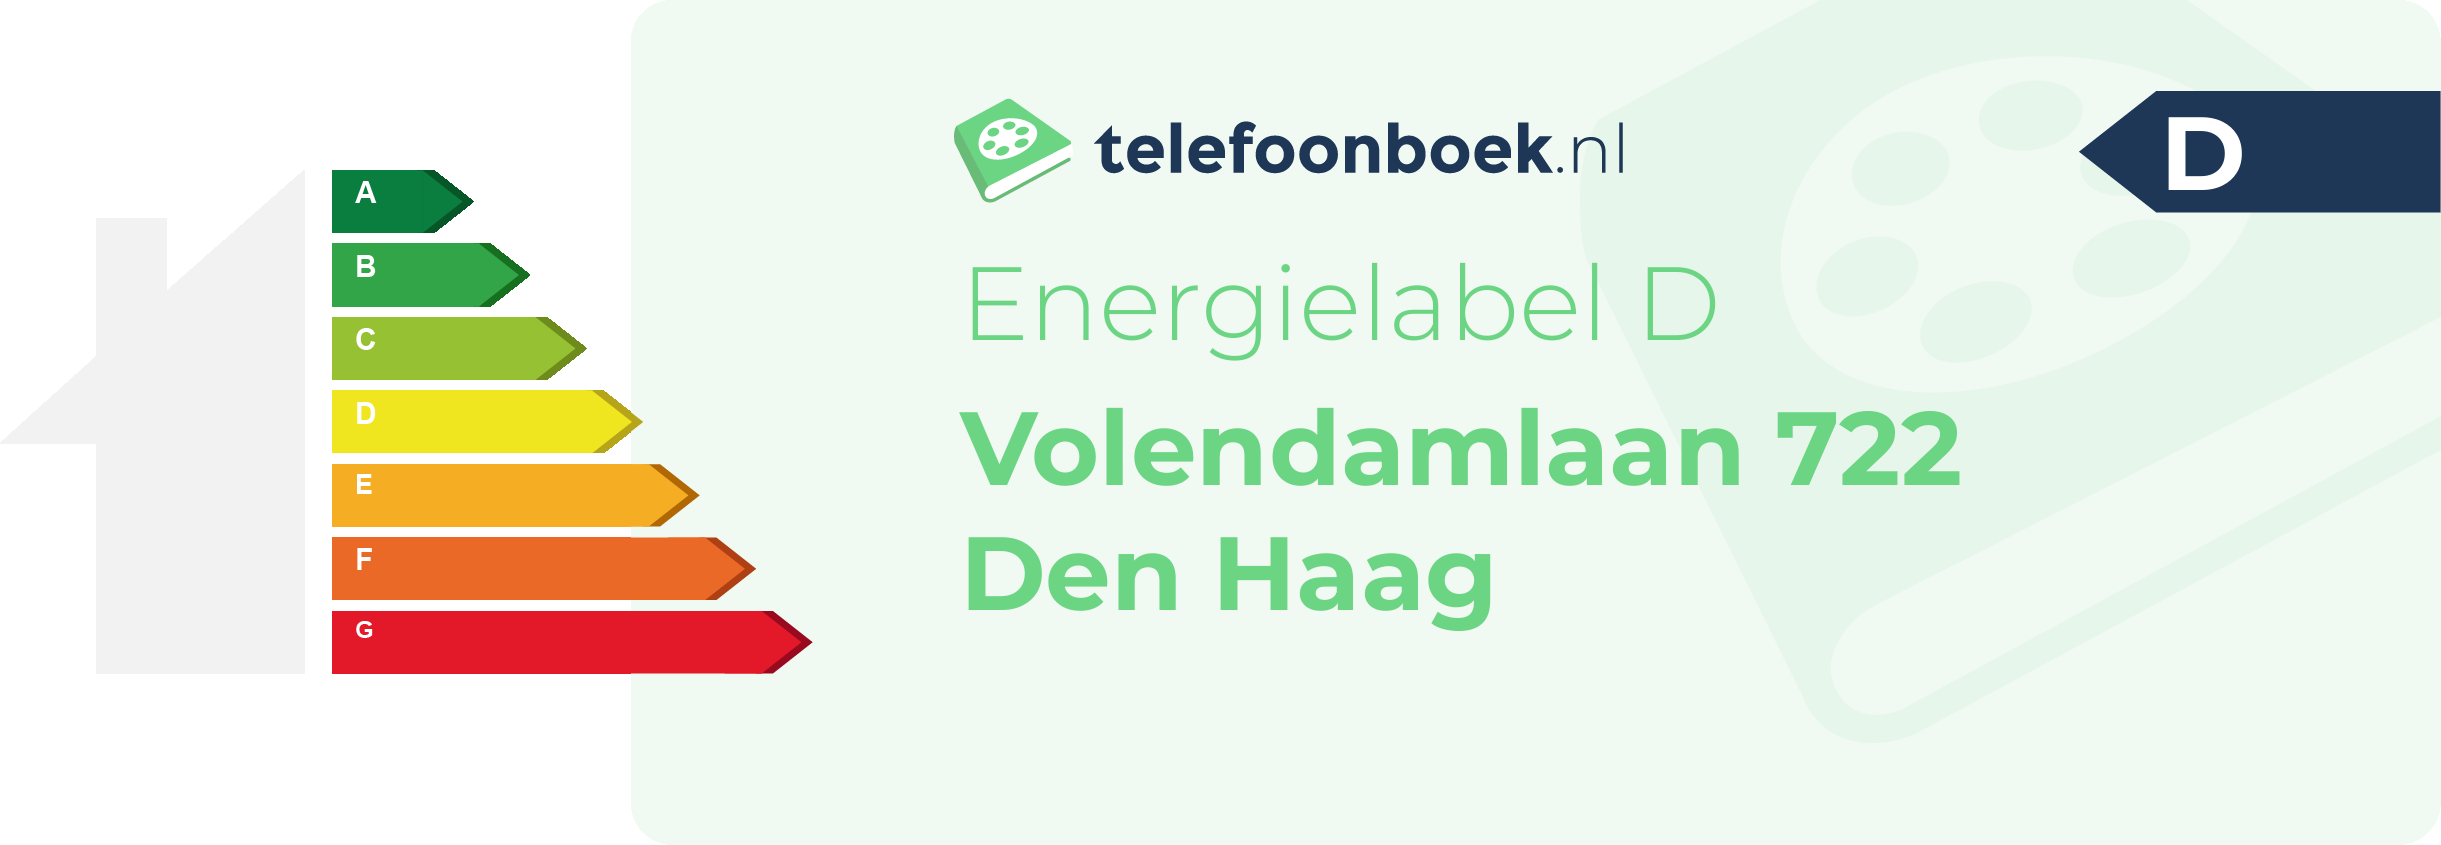 Energielabel Volendamlaan 722 Den Haag